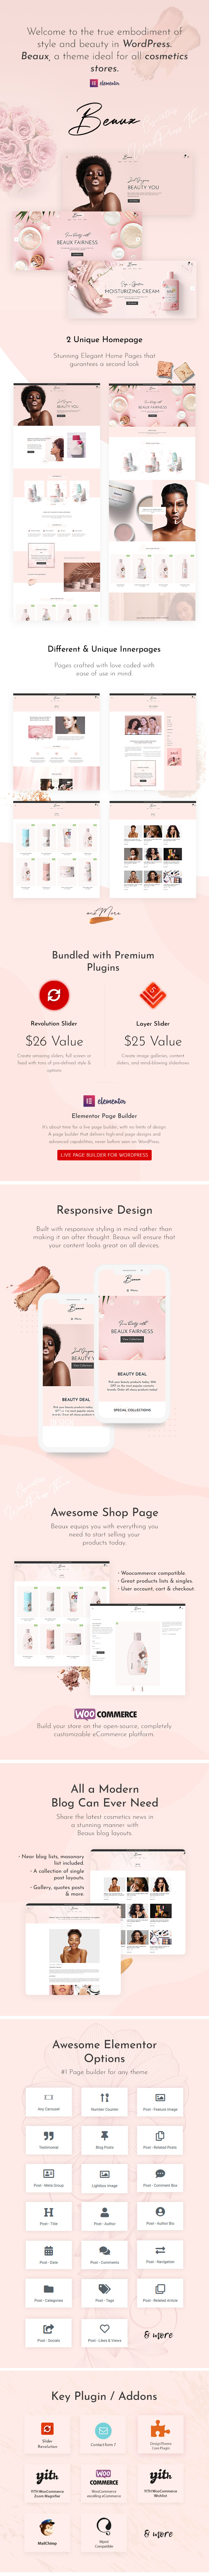 Beaux - Cosmetics Shop WordPress Theme - 1